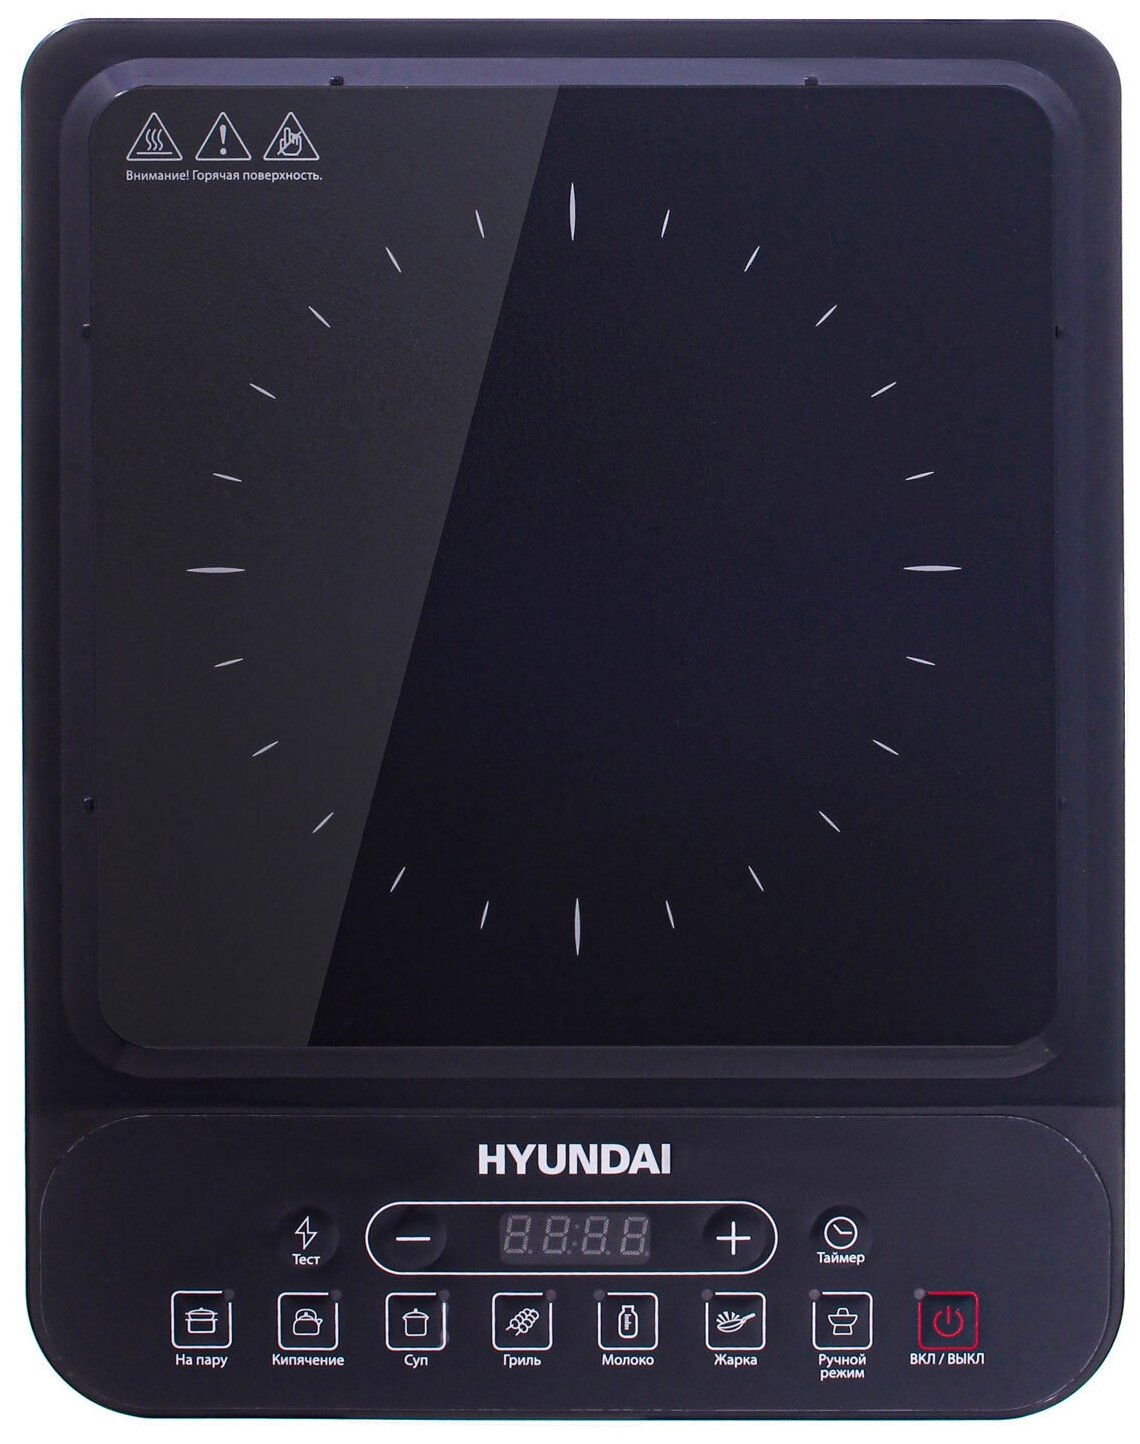 Плита Индукционная Hyundai HYC-0101 черный стеклокерамика (настольная)